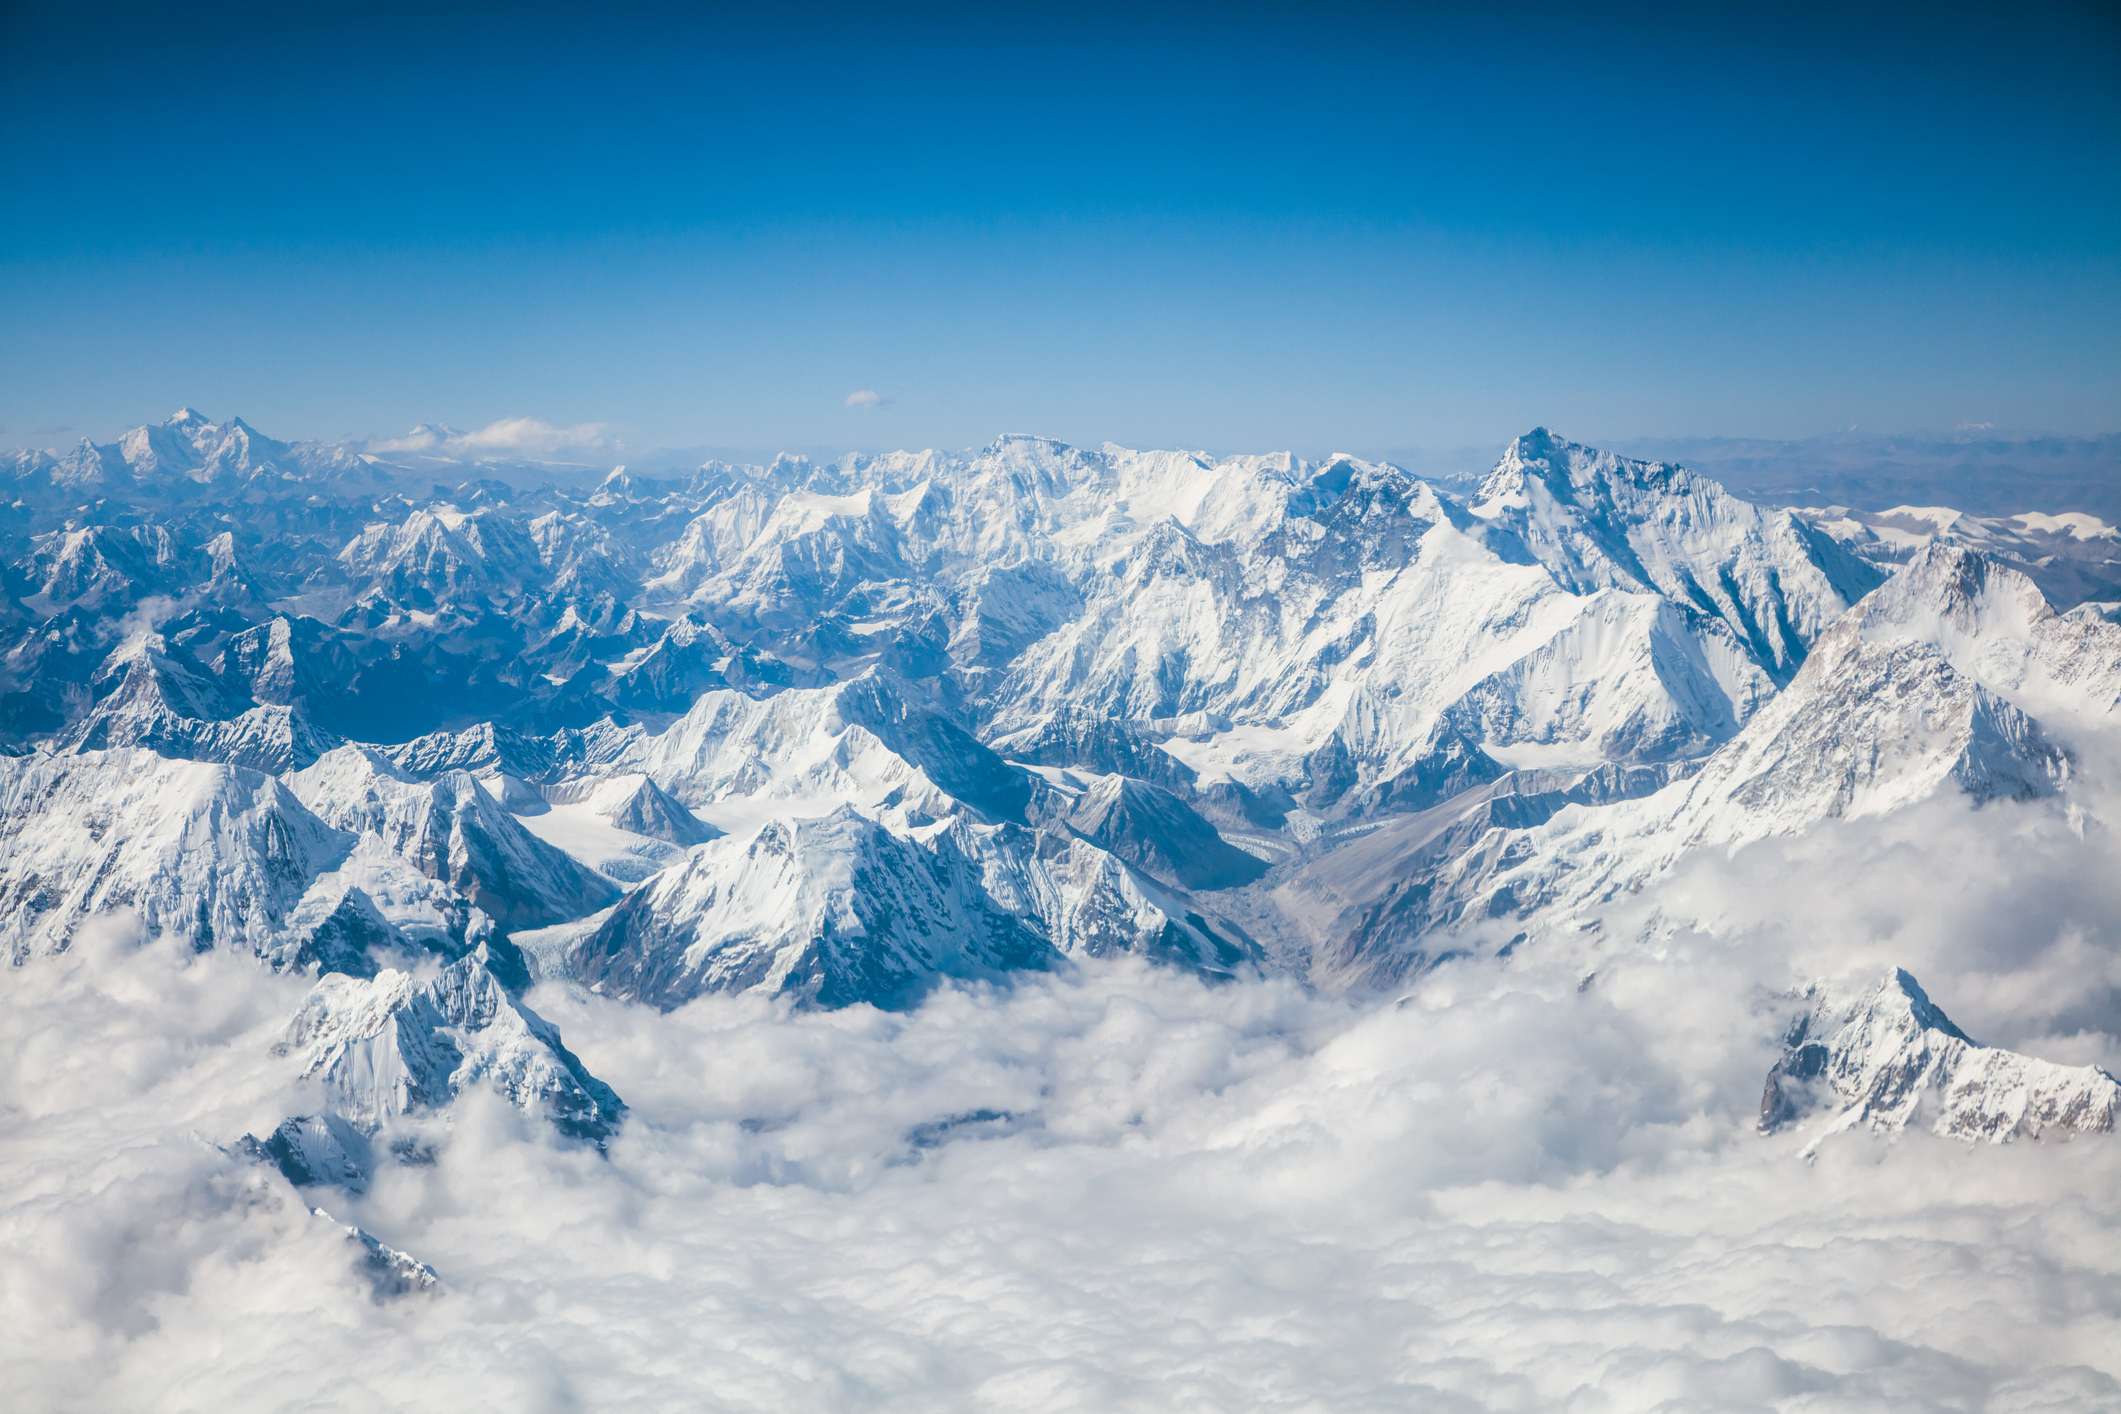  Himalaje Widoczne Pierwszy Raz Od Wielu Lat Z Odleg o ci 200 Km Za 